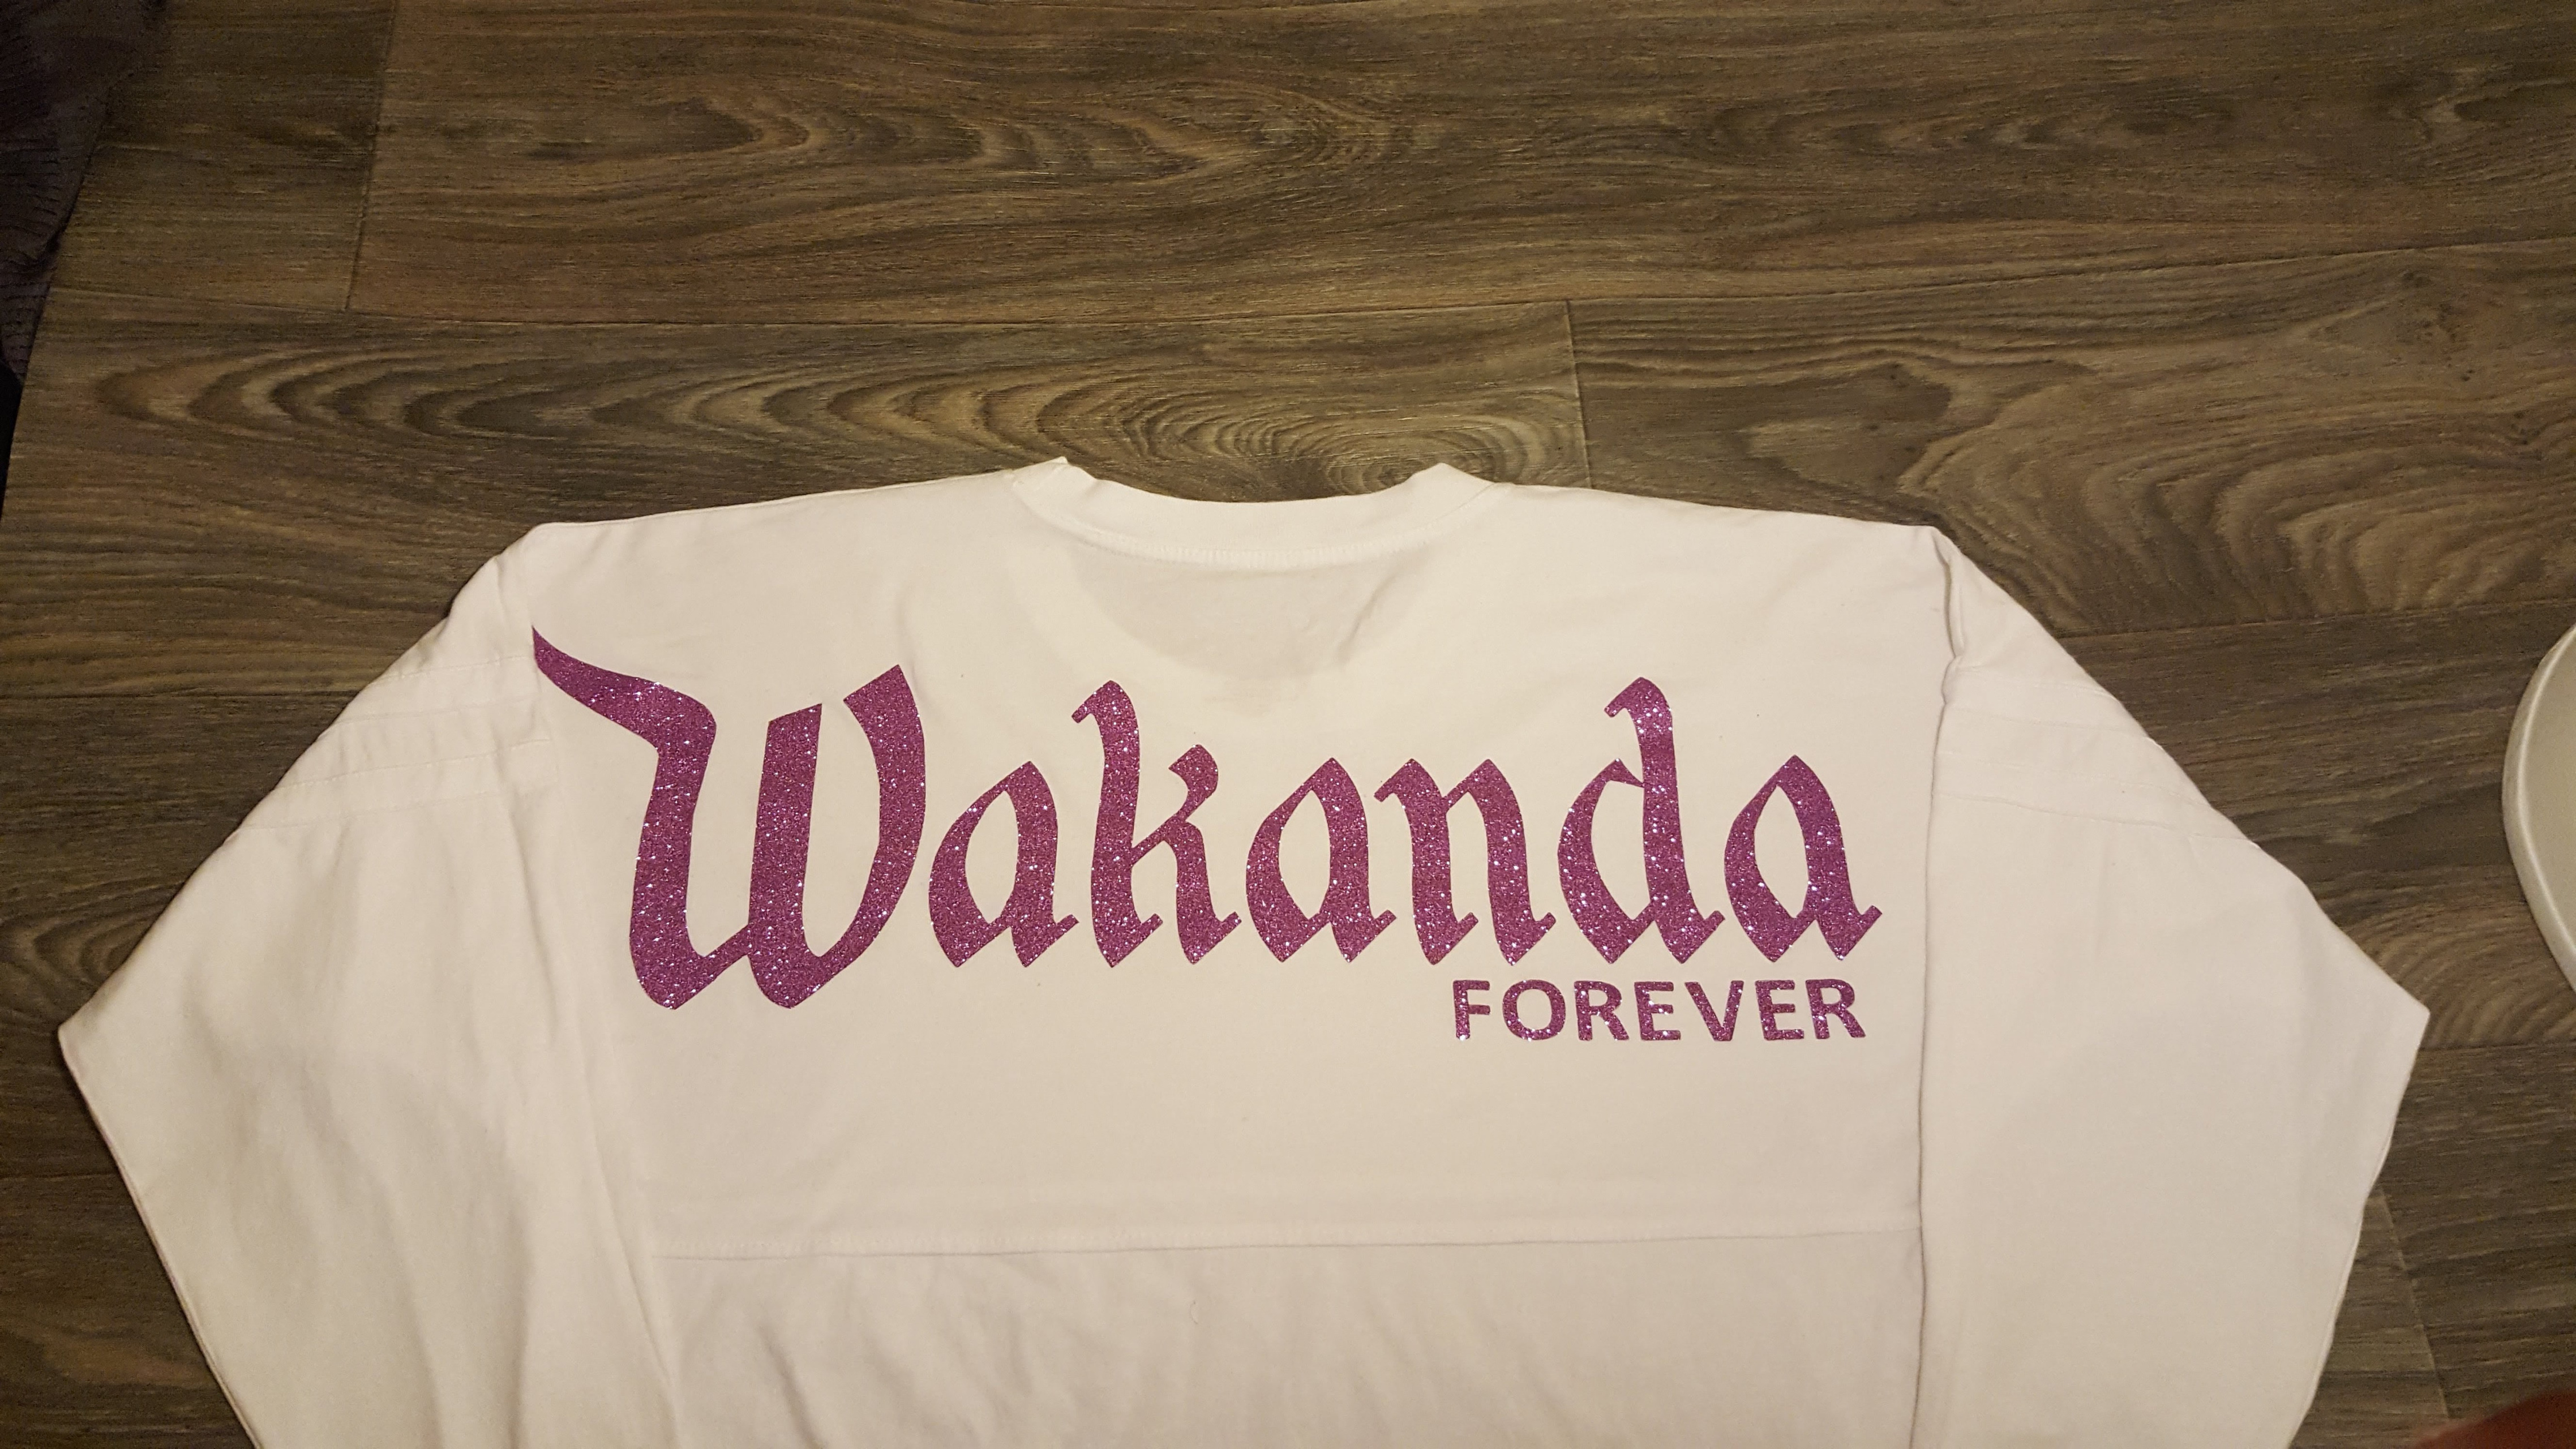 wakanda forever jersey